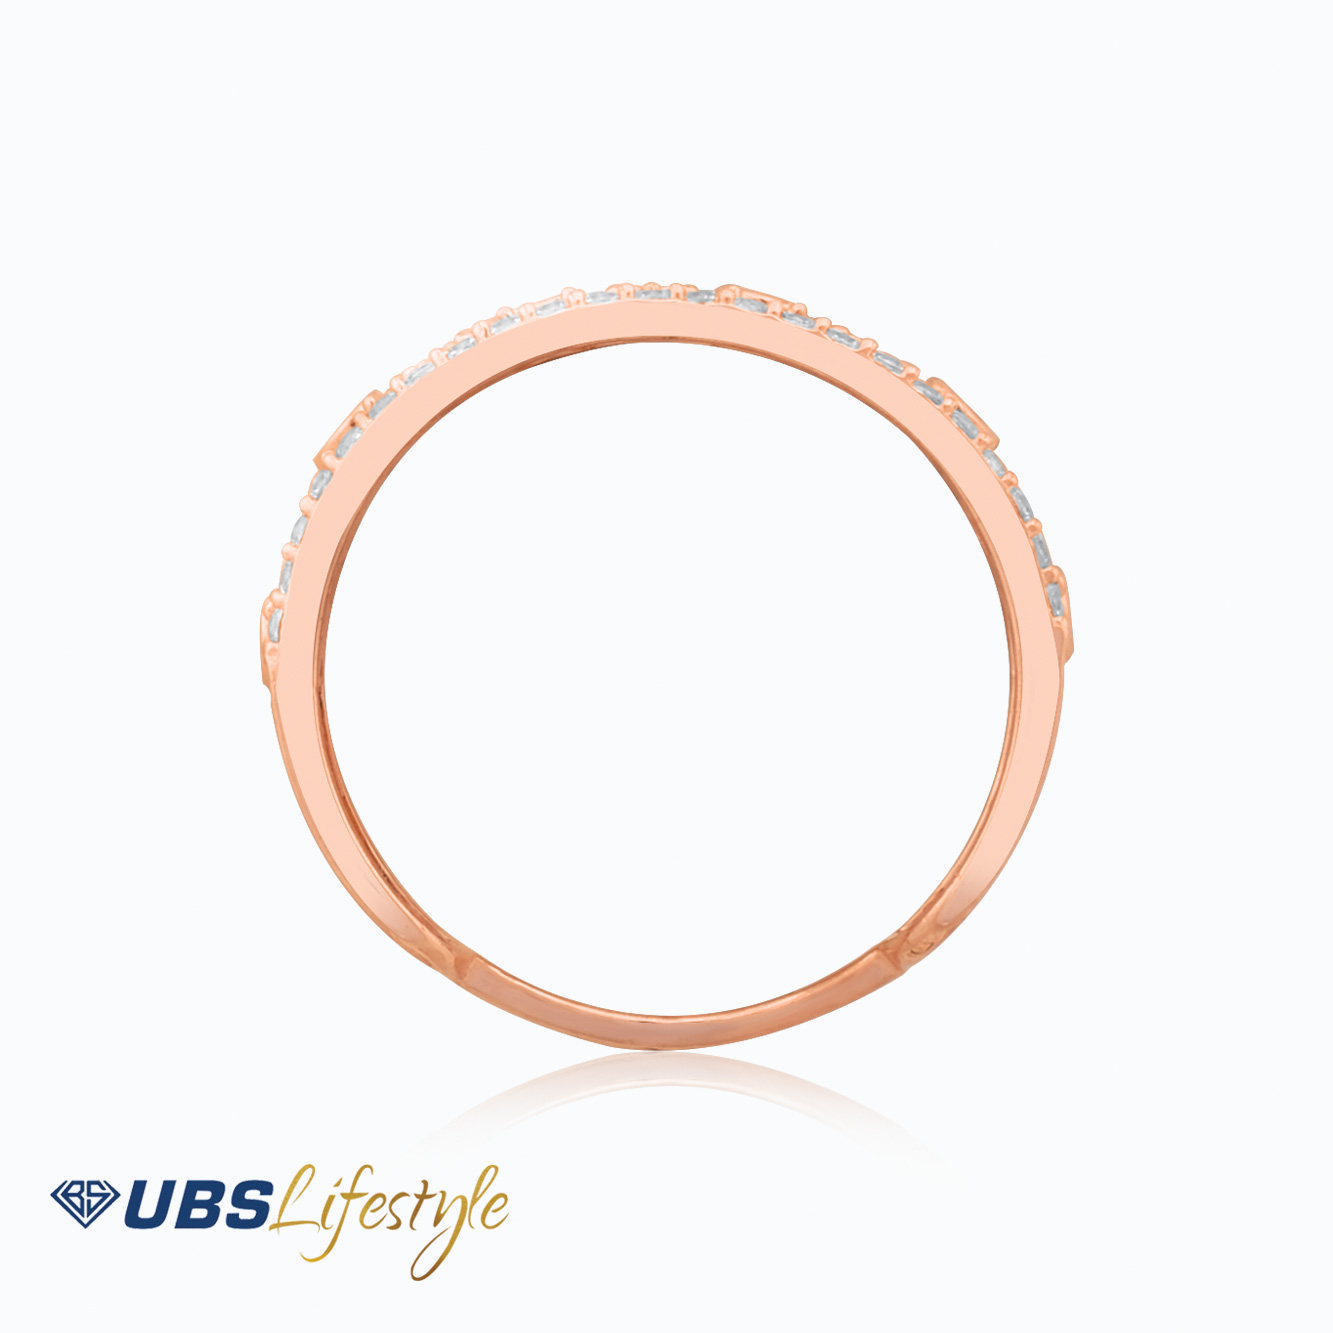 CINCIN GOLD UBS - CC15608 - 17K - MERAH